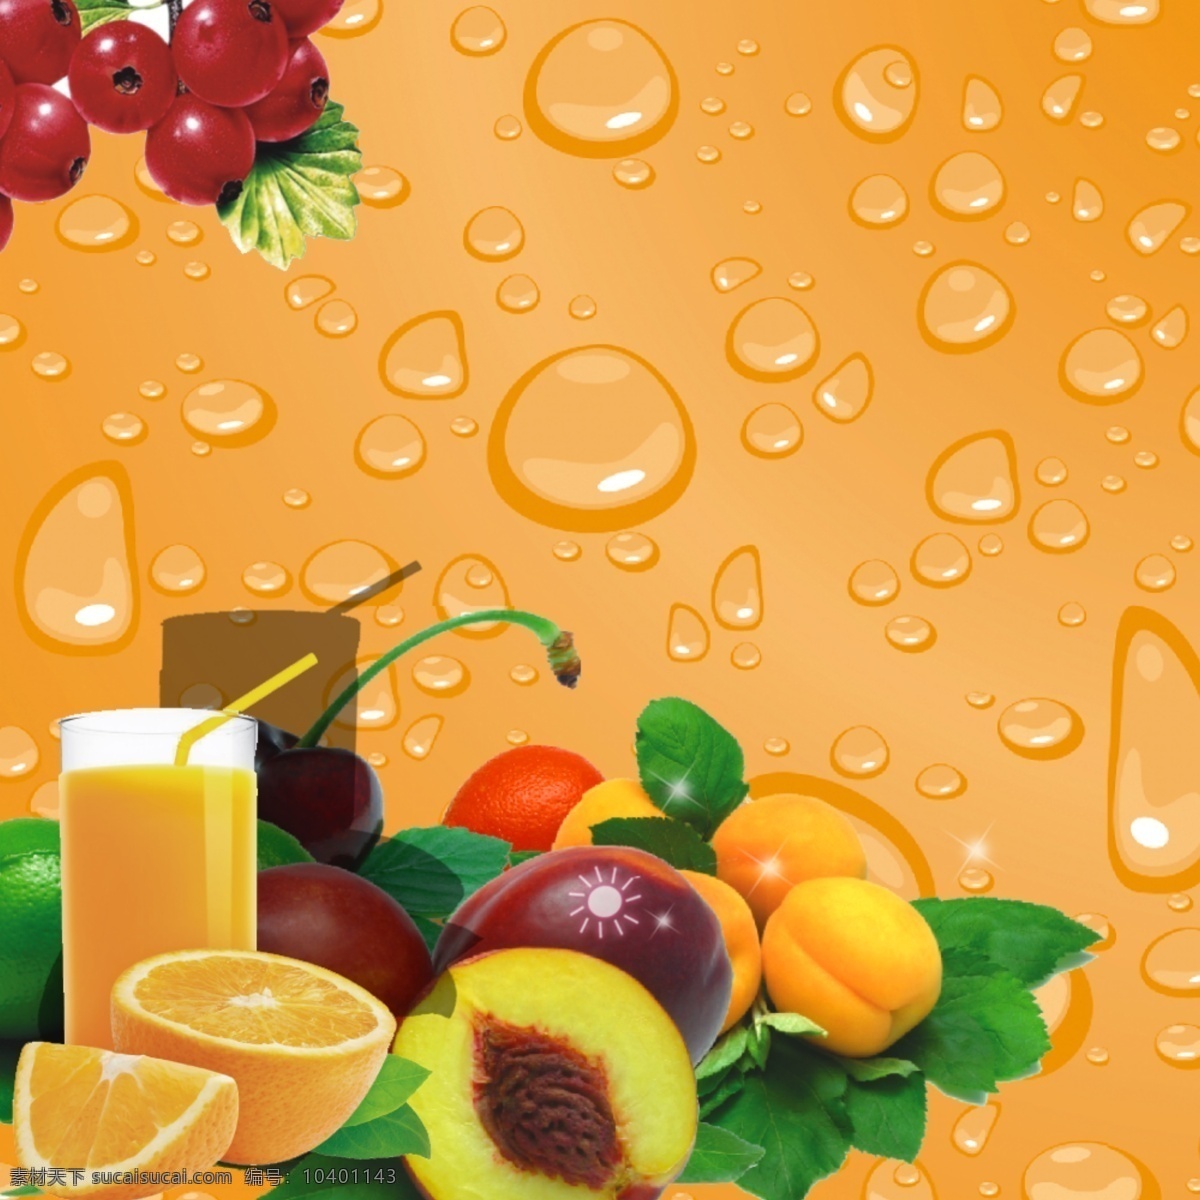 淘宝 榨汁 机主 图 模版 淘宝店铺素材 宝贝 展示 原汁 机 榨汁机 韩国原汁机 原汁机 水果 绿色 果汁 橙色